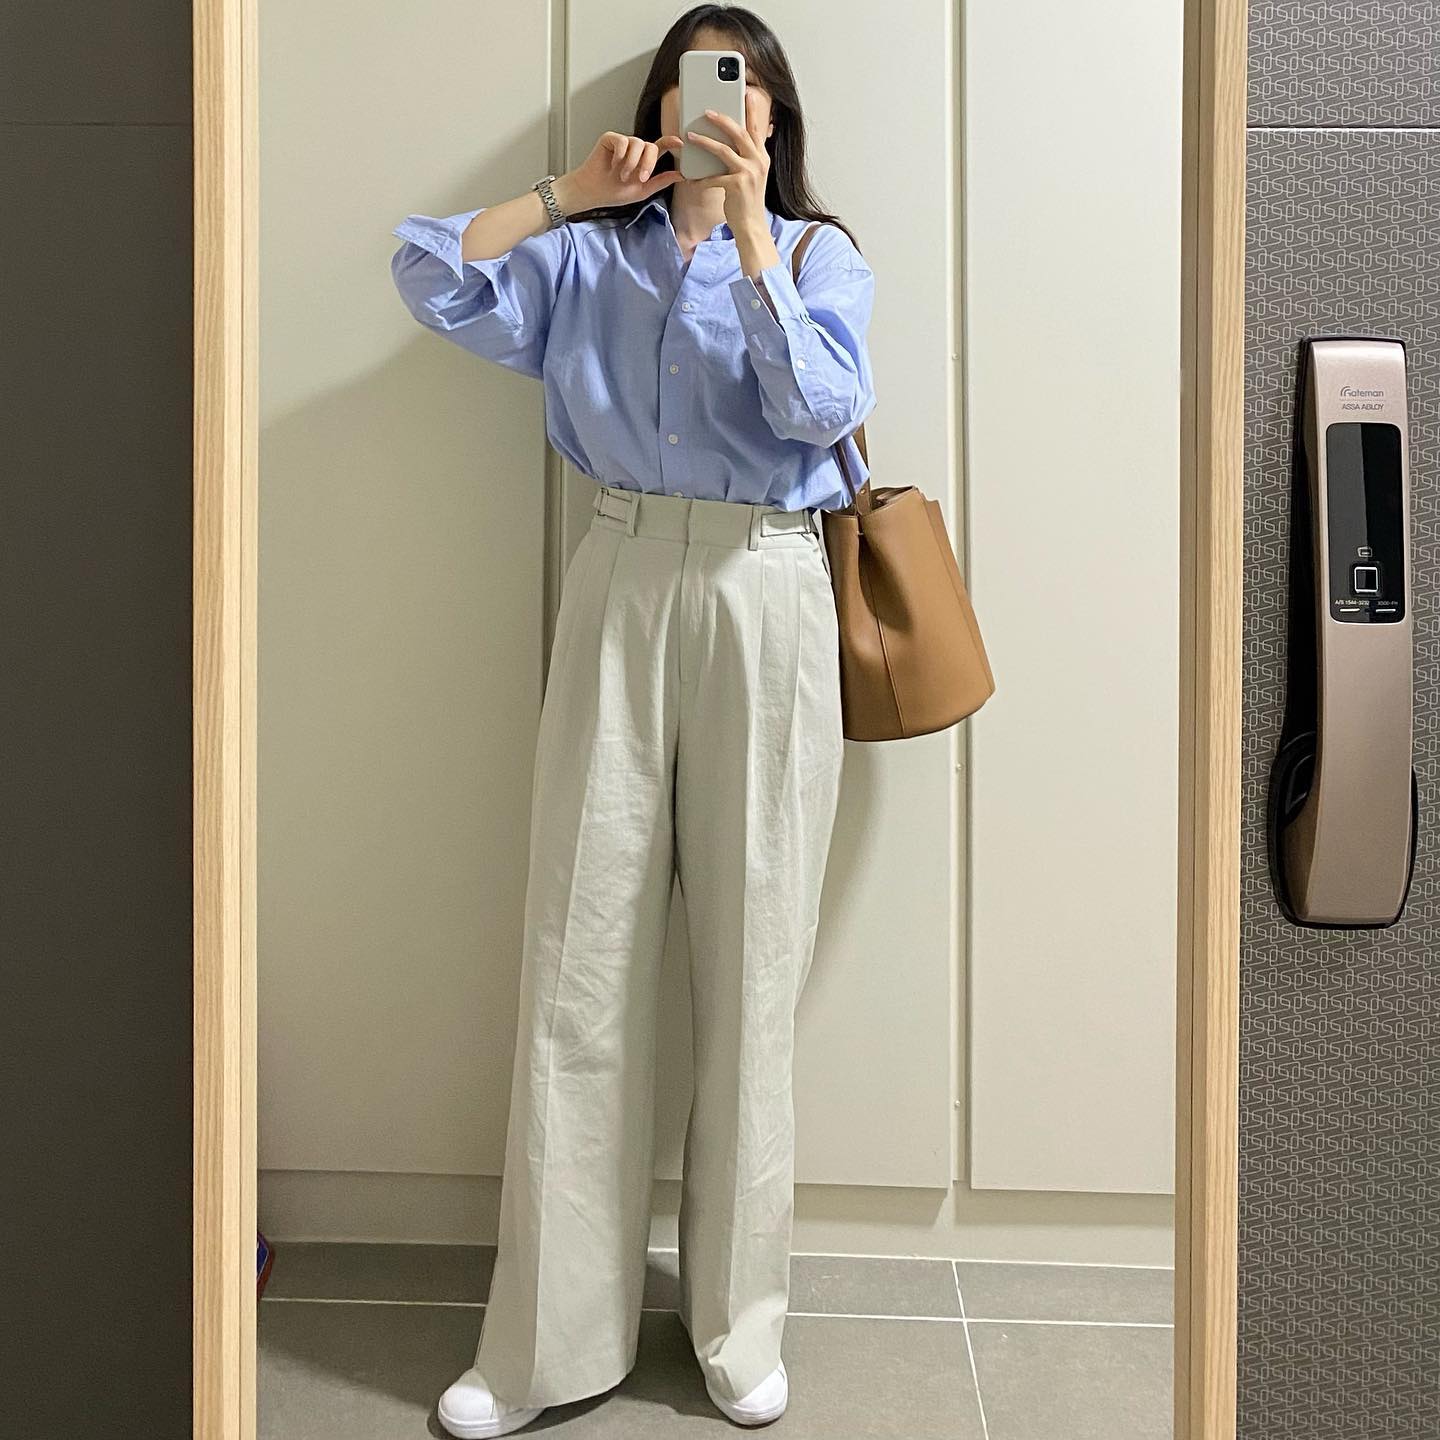 Quý cô Hàn Quốc chuyên diện áo sơ mi   quần âu theo style tối giản, nhưng có thừa độ thanh lịch trẻ trung - Ảnh 5.